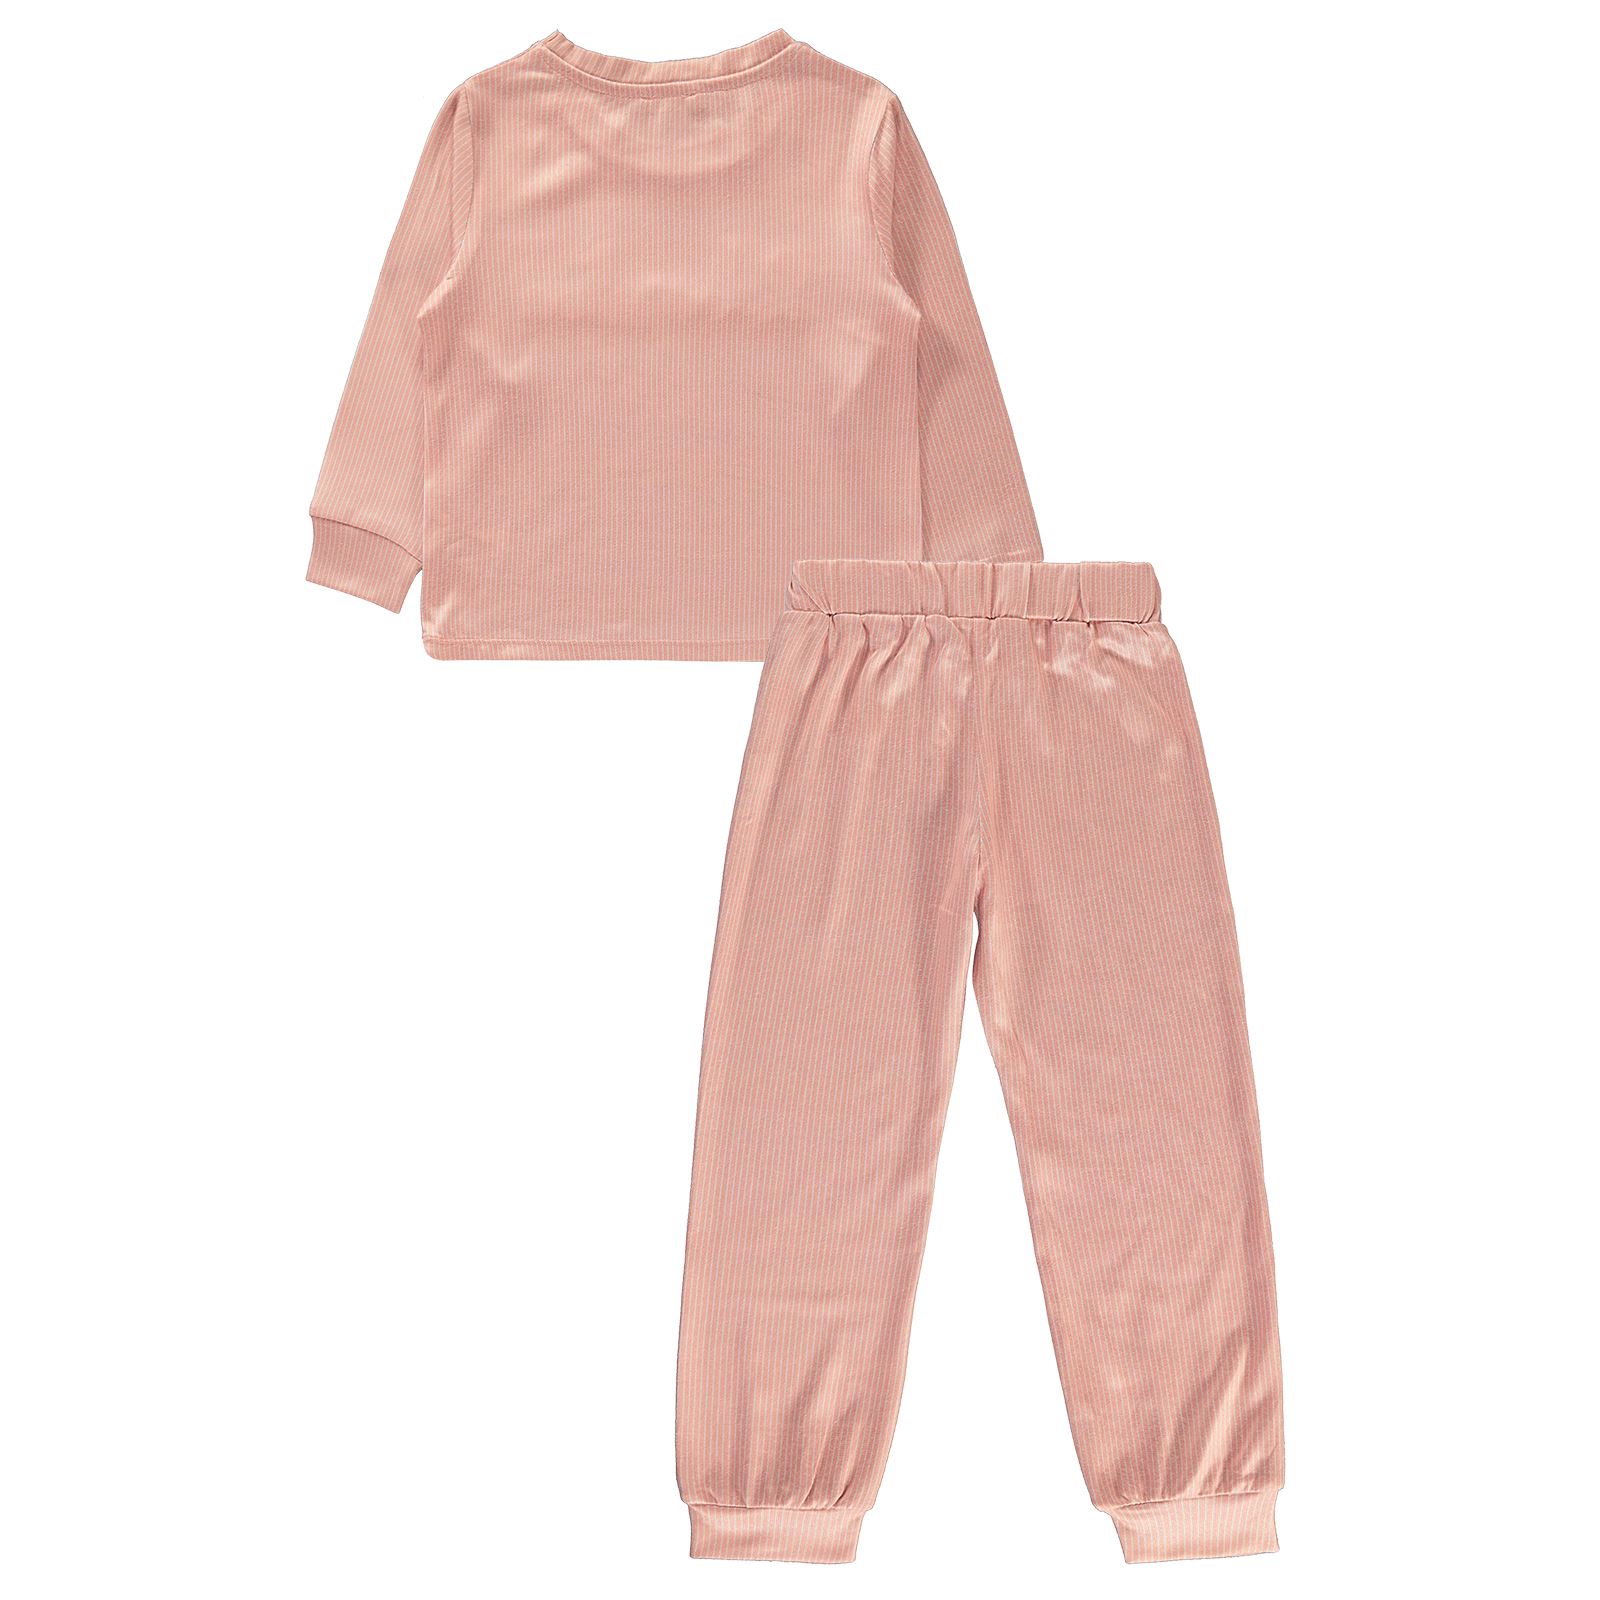 Benetton Kız Çocuk Pijama Takımı 4-13 Yaş Somon